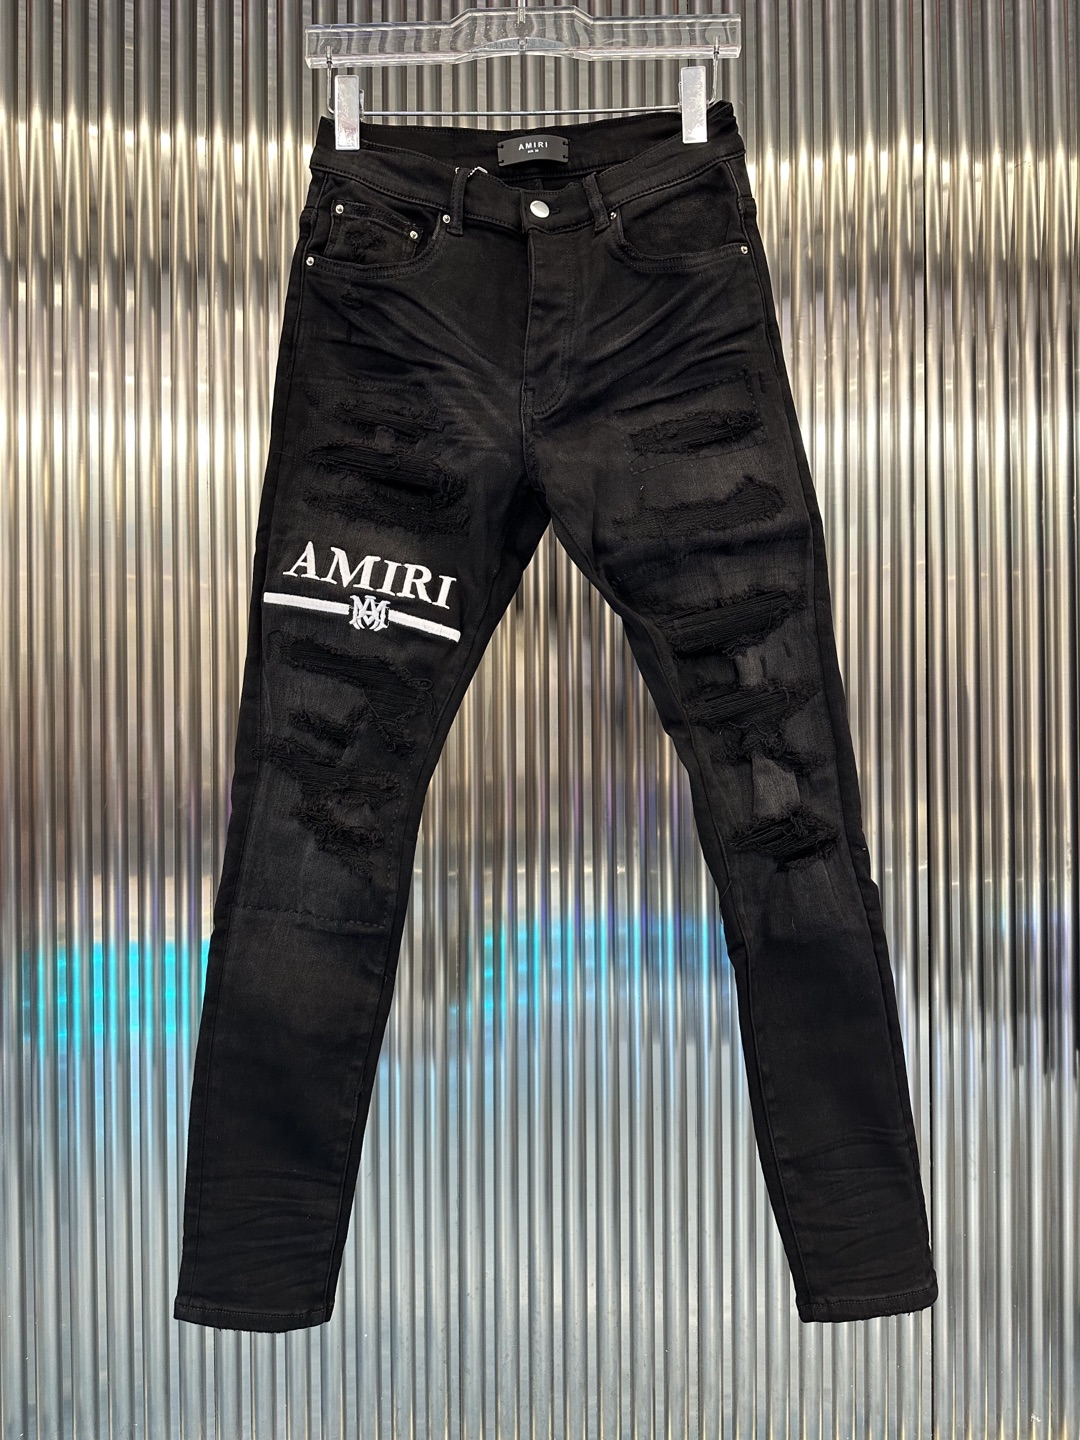 AMIRI アメリカミズアブスーパーコピー デニムズボン 美脚 パンツ ロゴプリント 柔らかい シンプル 限定販売 ブラック_1